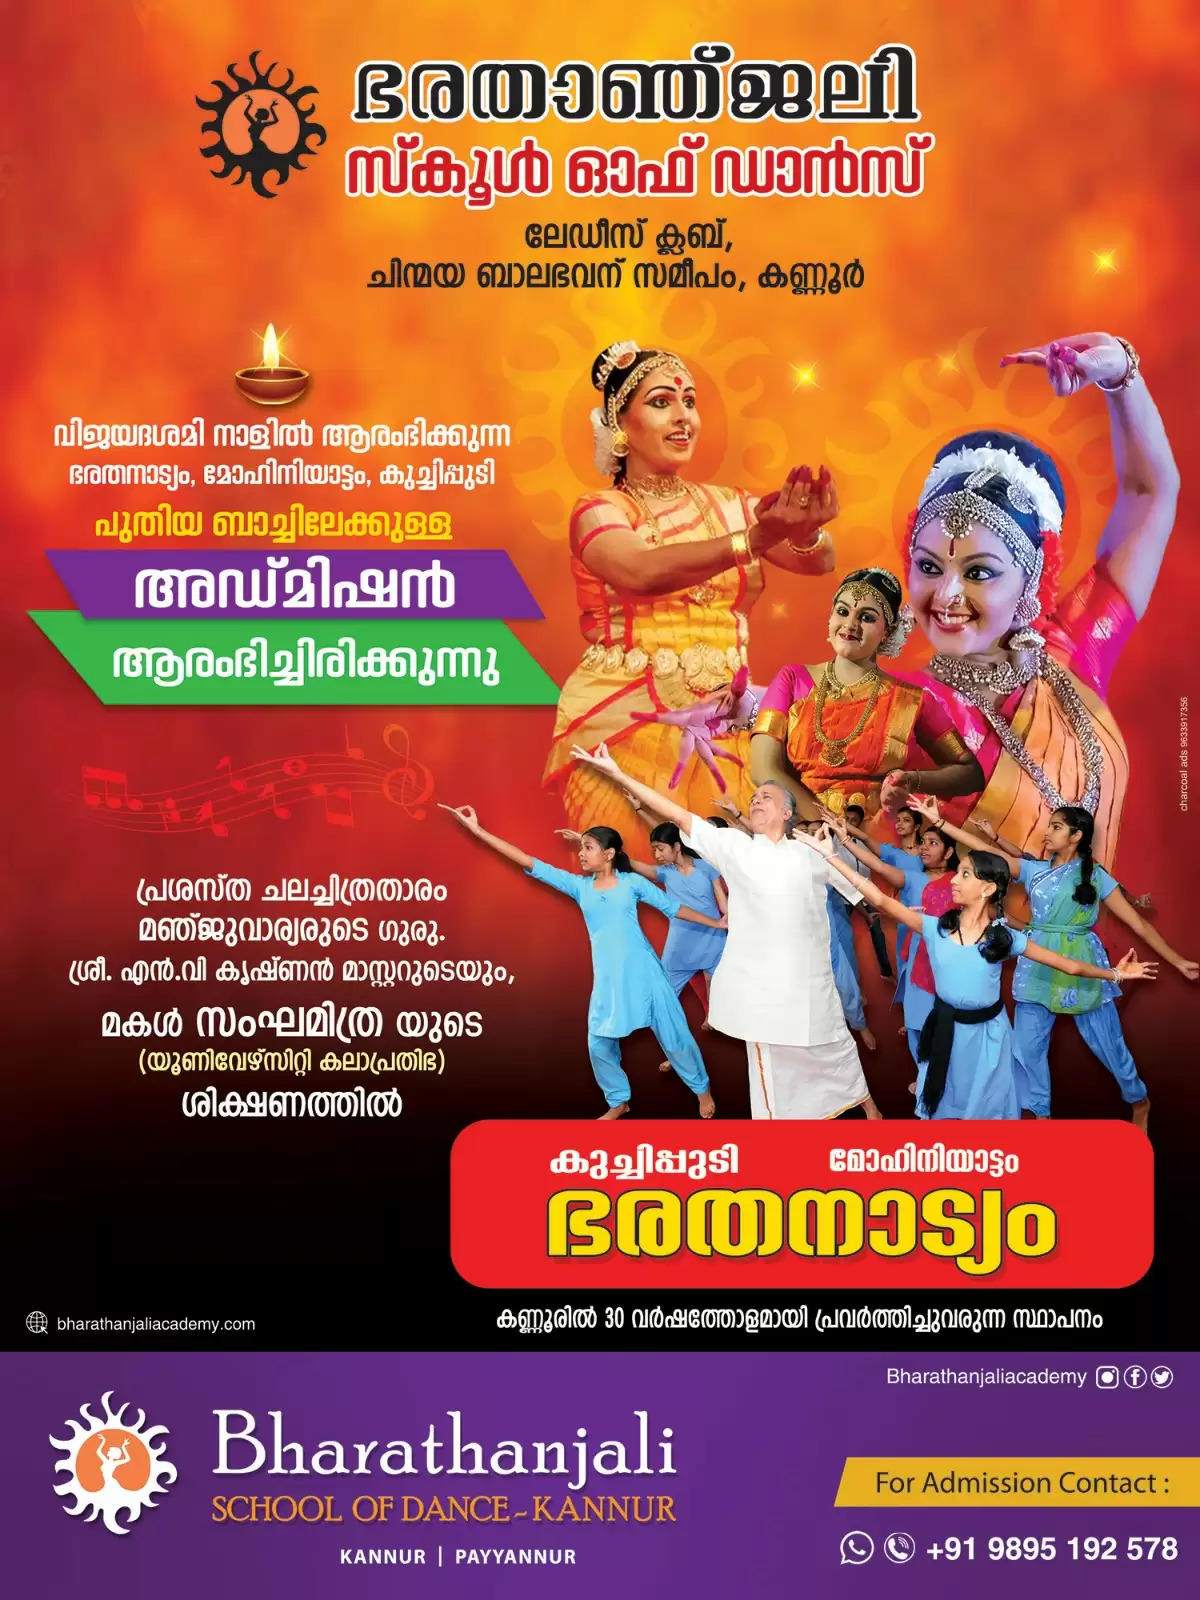 barathanjali dance school kannur